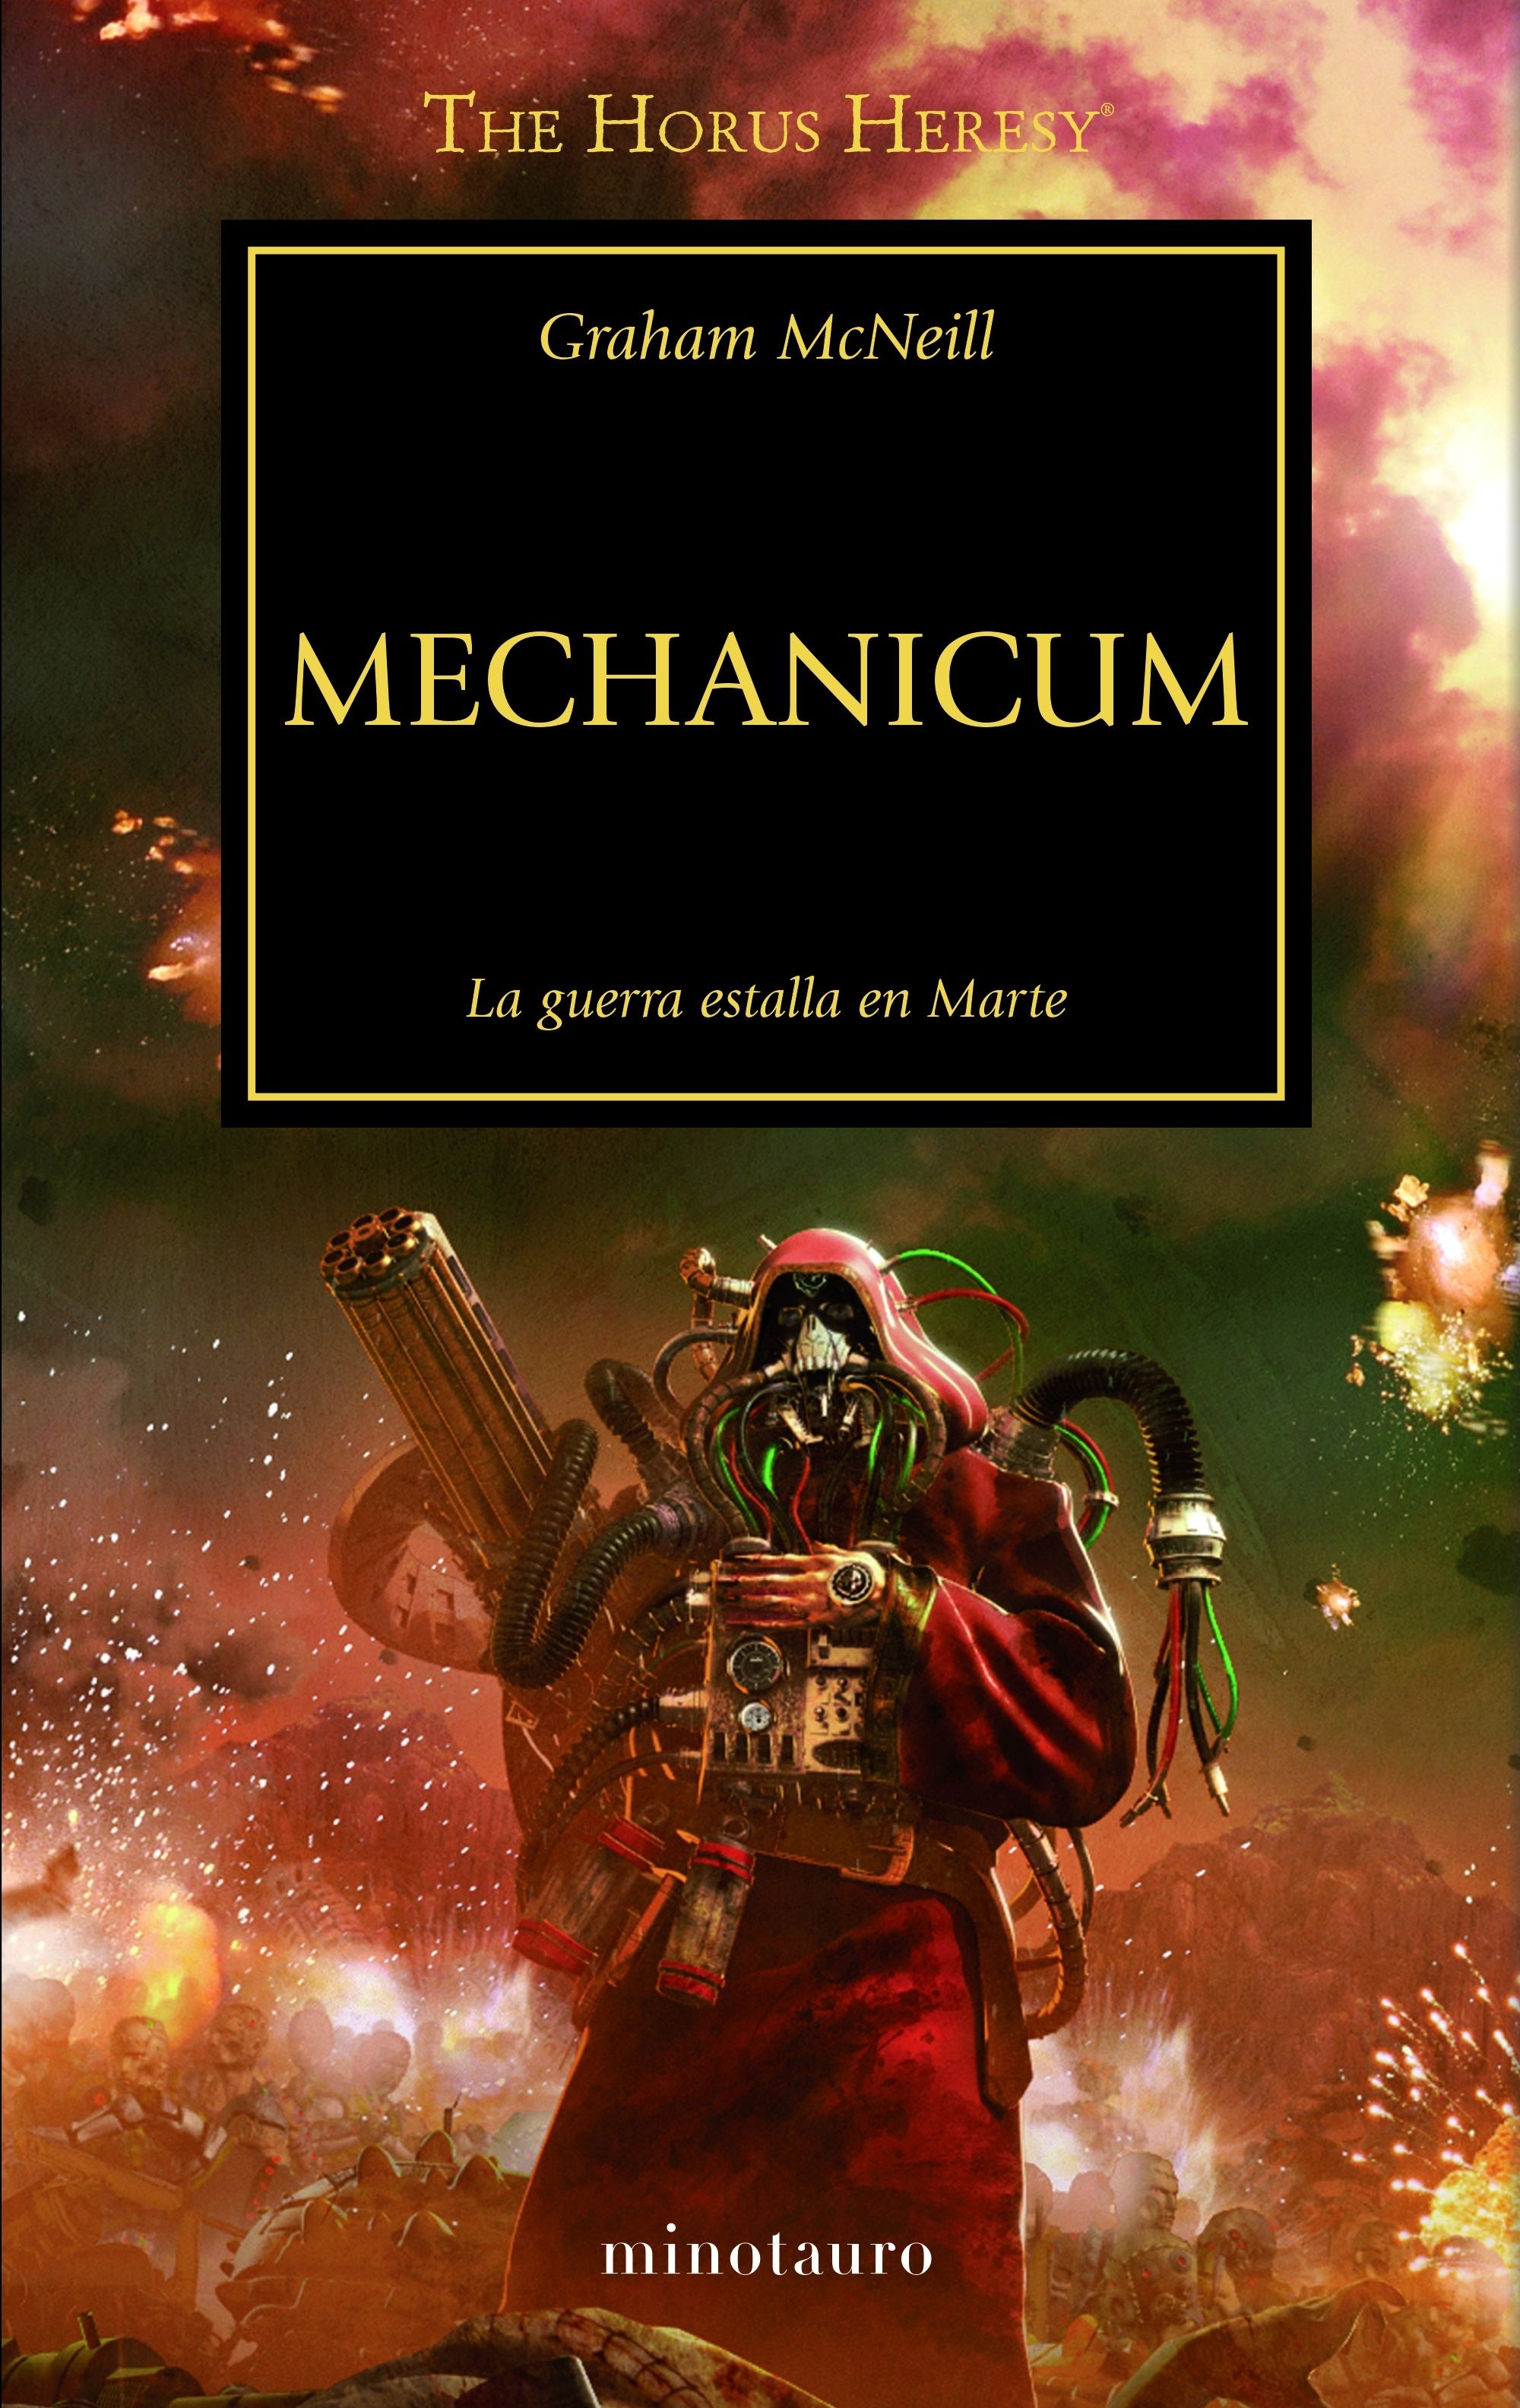 Mechanicum "La Herejía de Horus 9". La Herejía de Horus 9